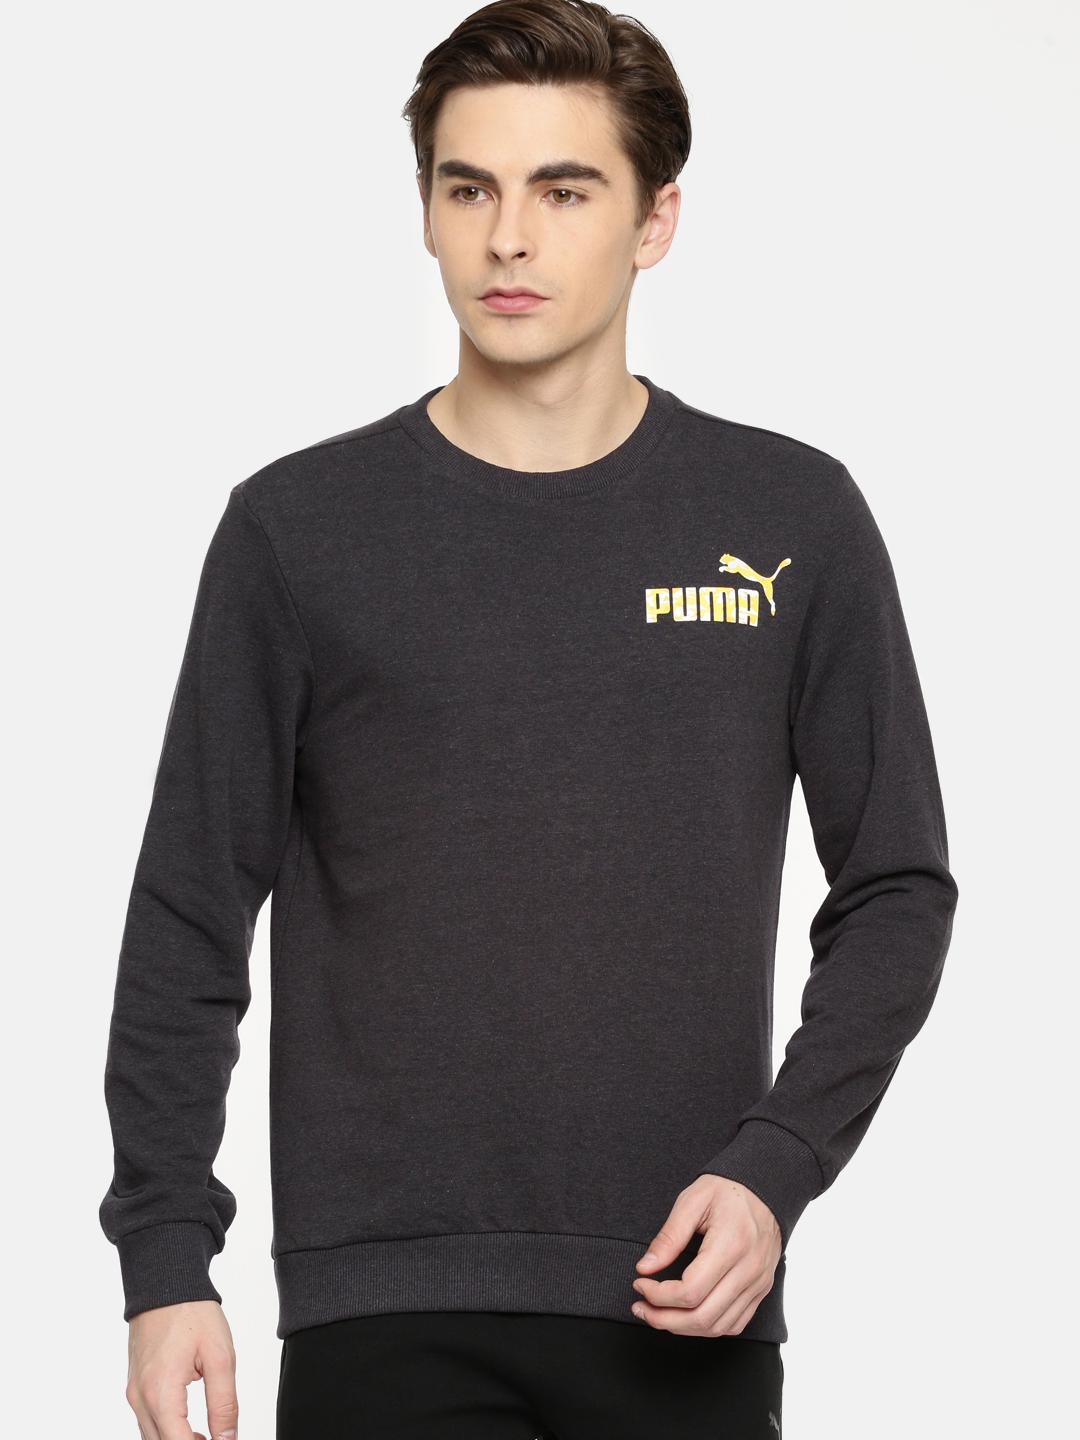 puma charcoal grey sweatshirt